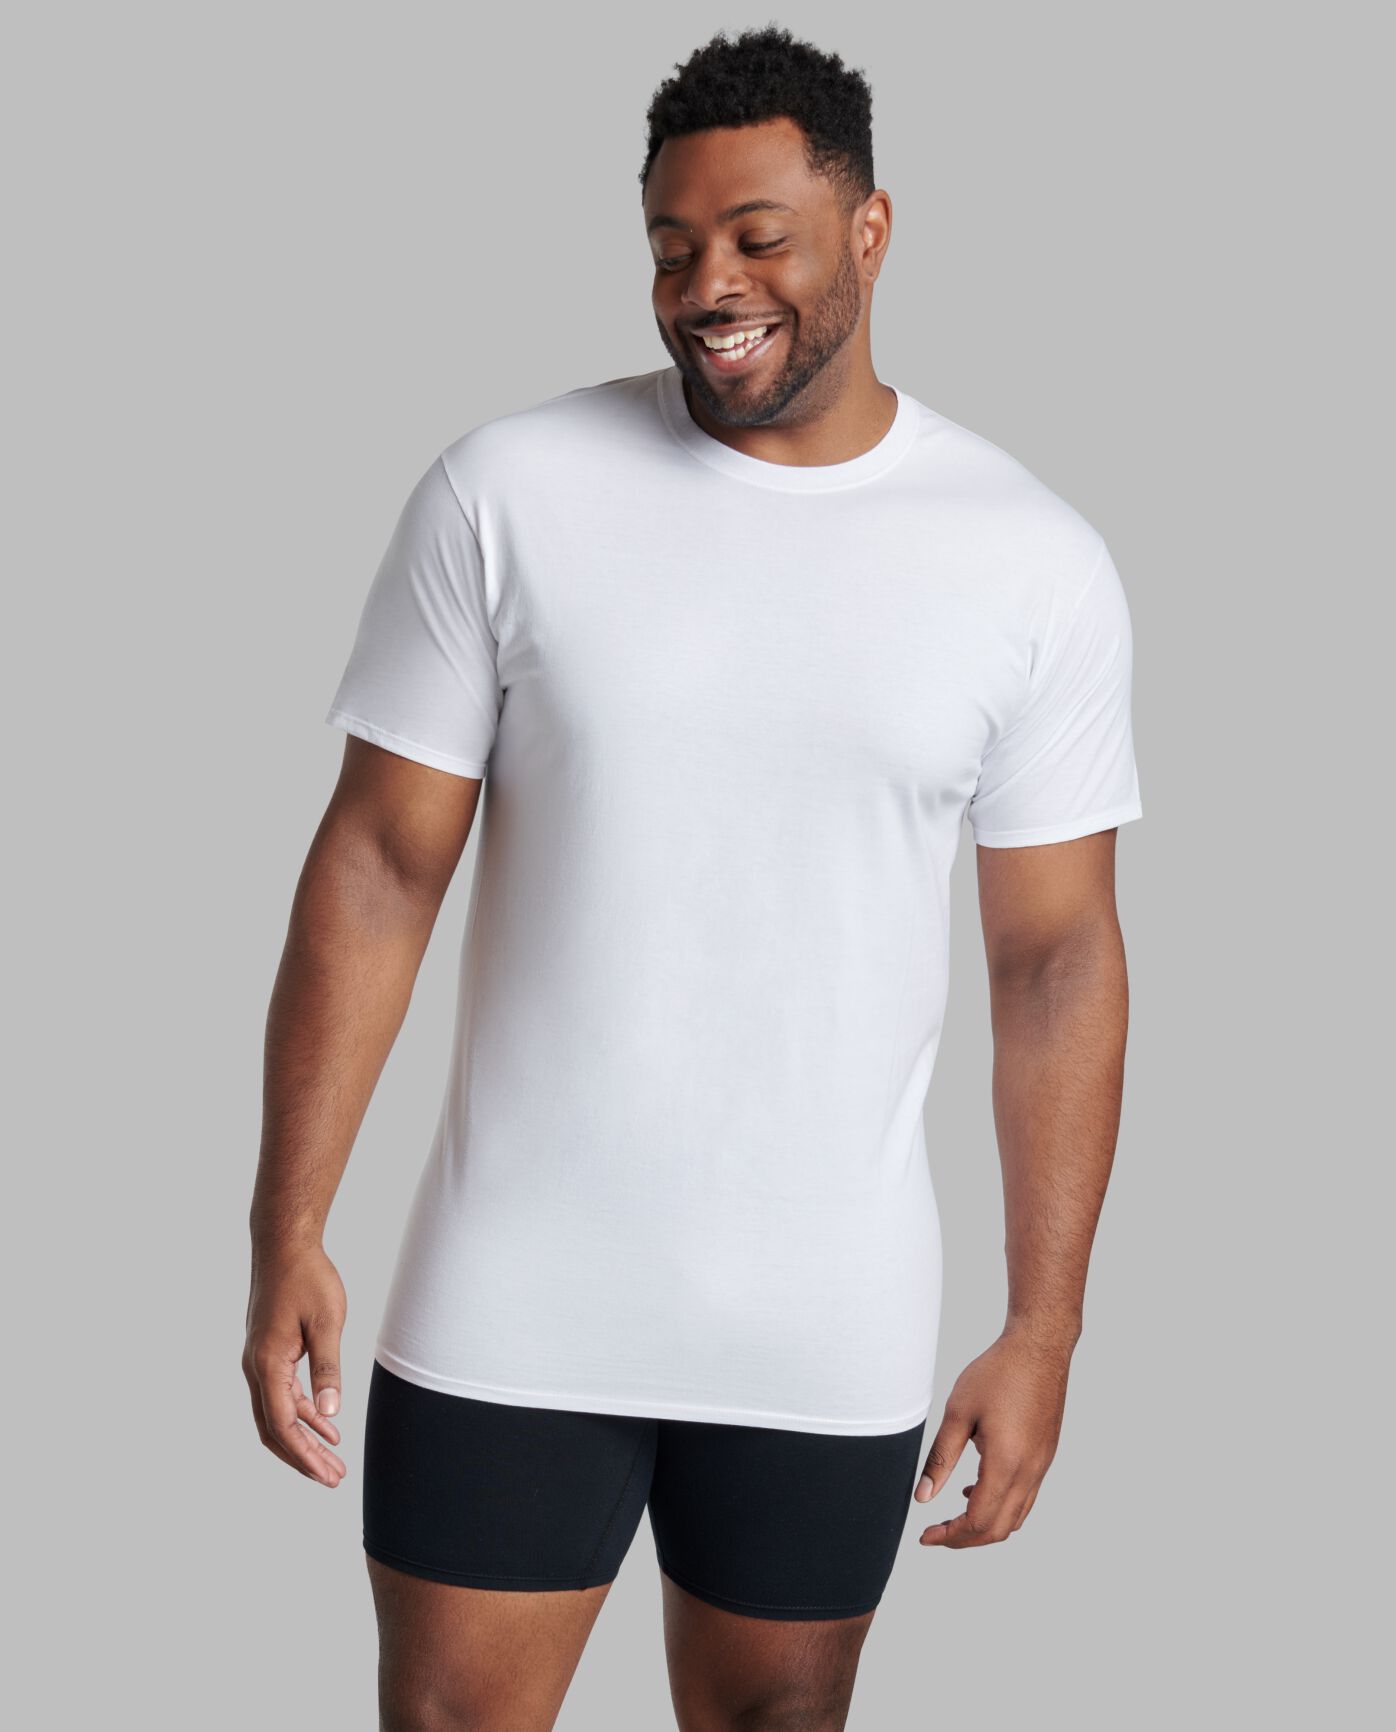 du er teori I nåde af Tall Men's Classic White Crew Neck T-Shirts, 6 Pack